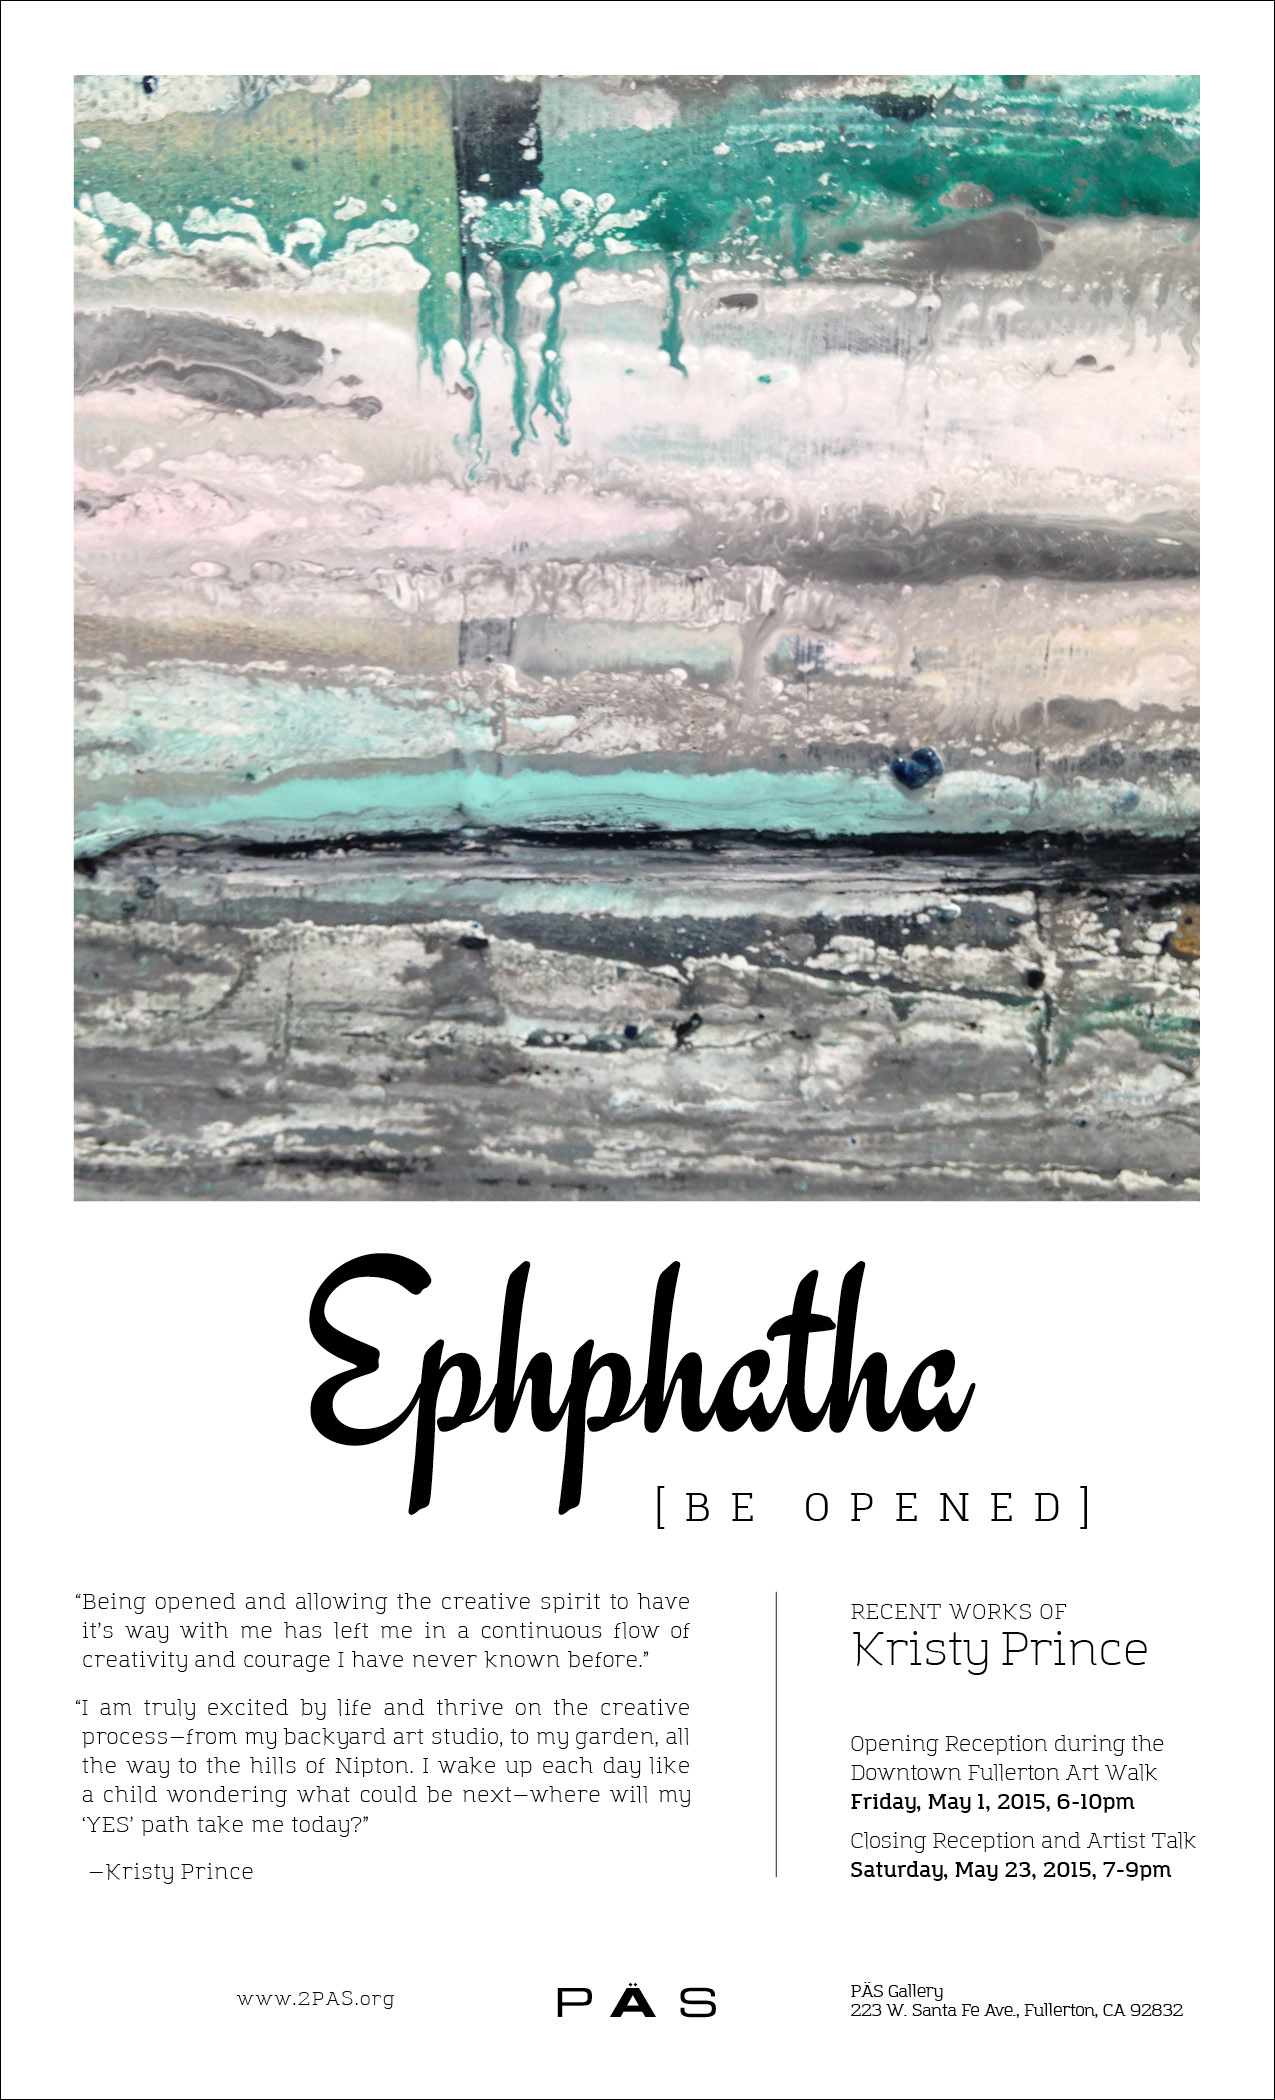 Ephphatha_0515